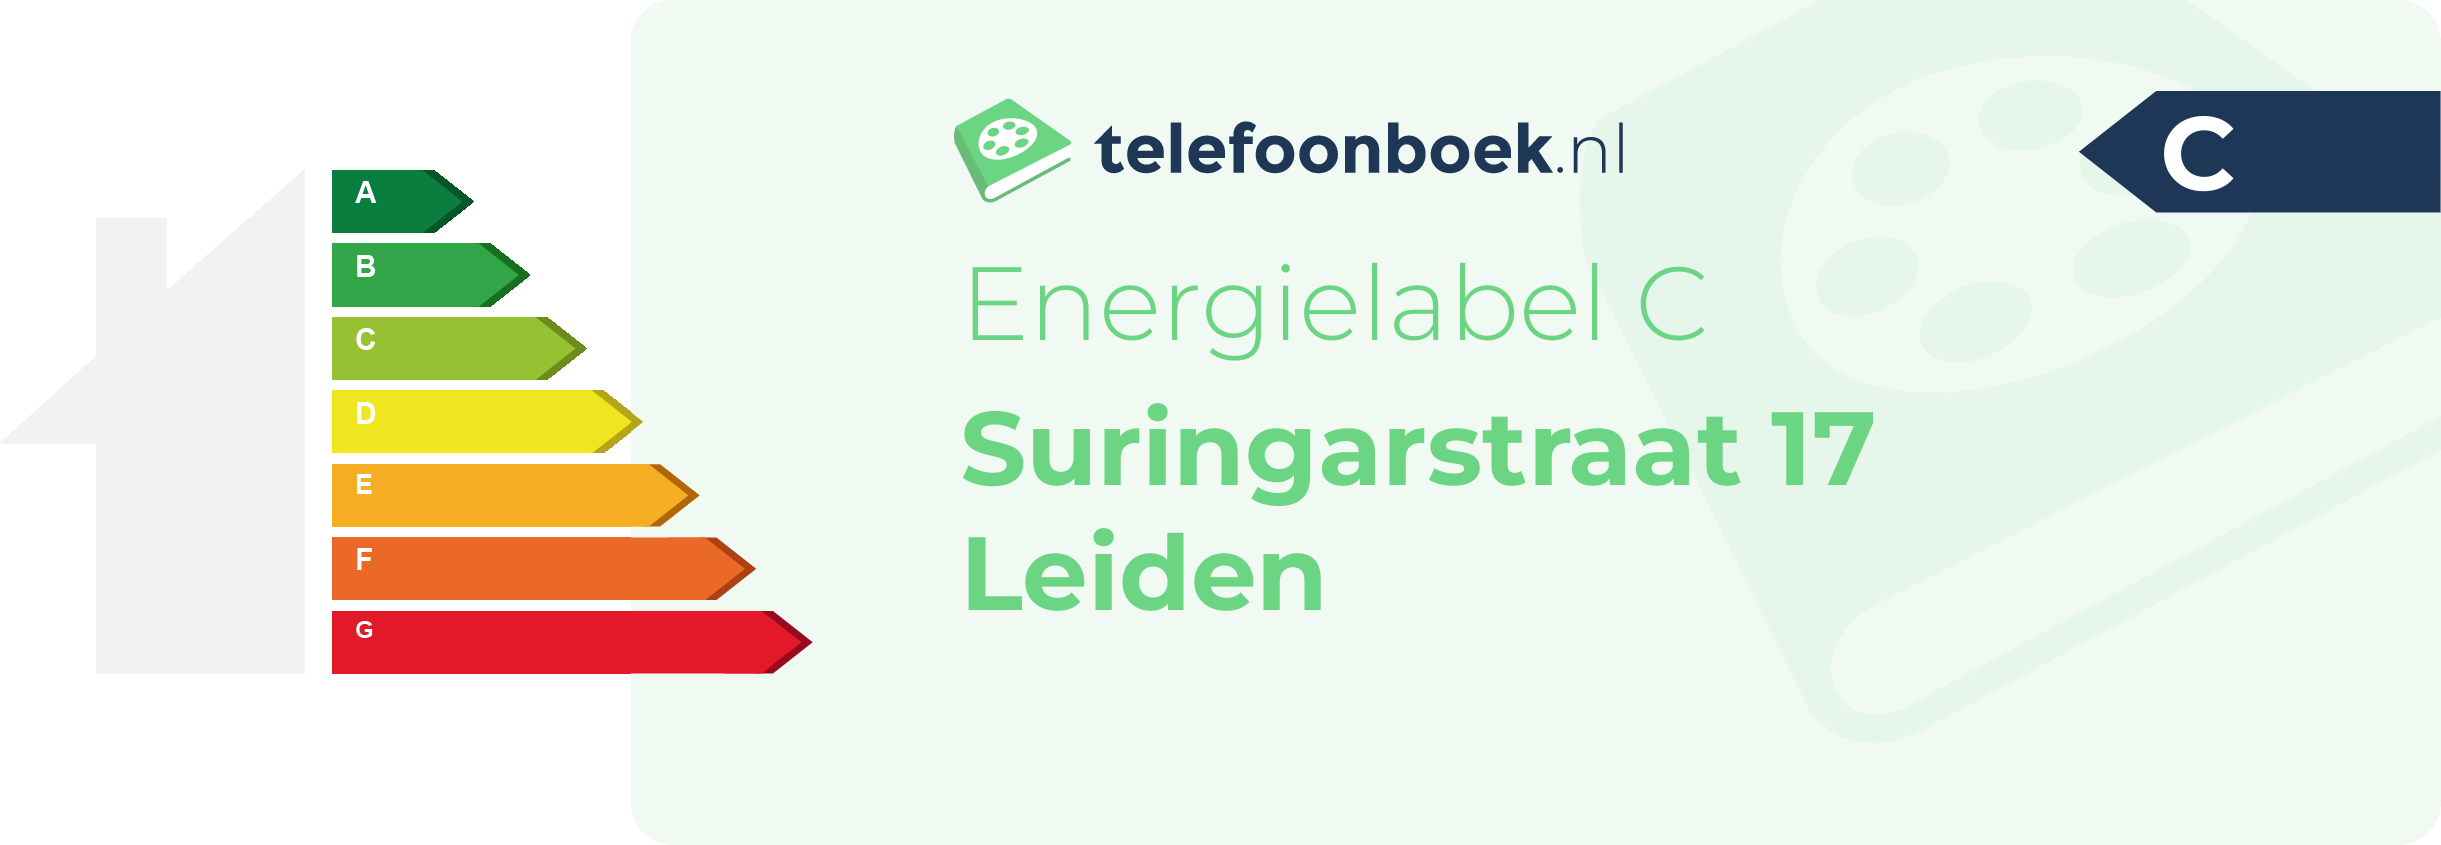 Energielabel Suringarstraat 17 Leiden